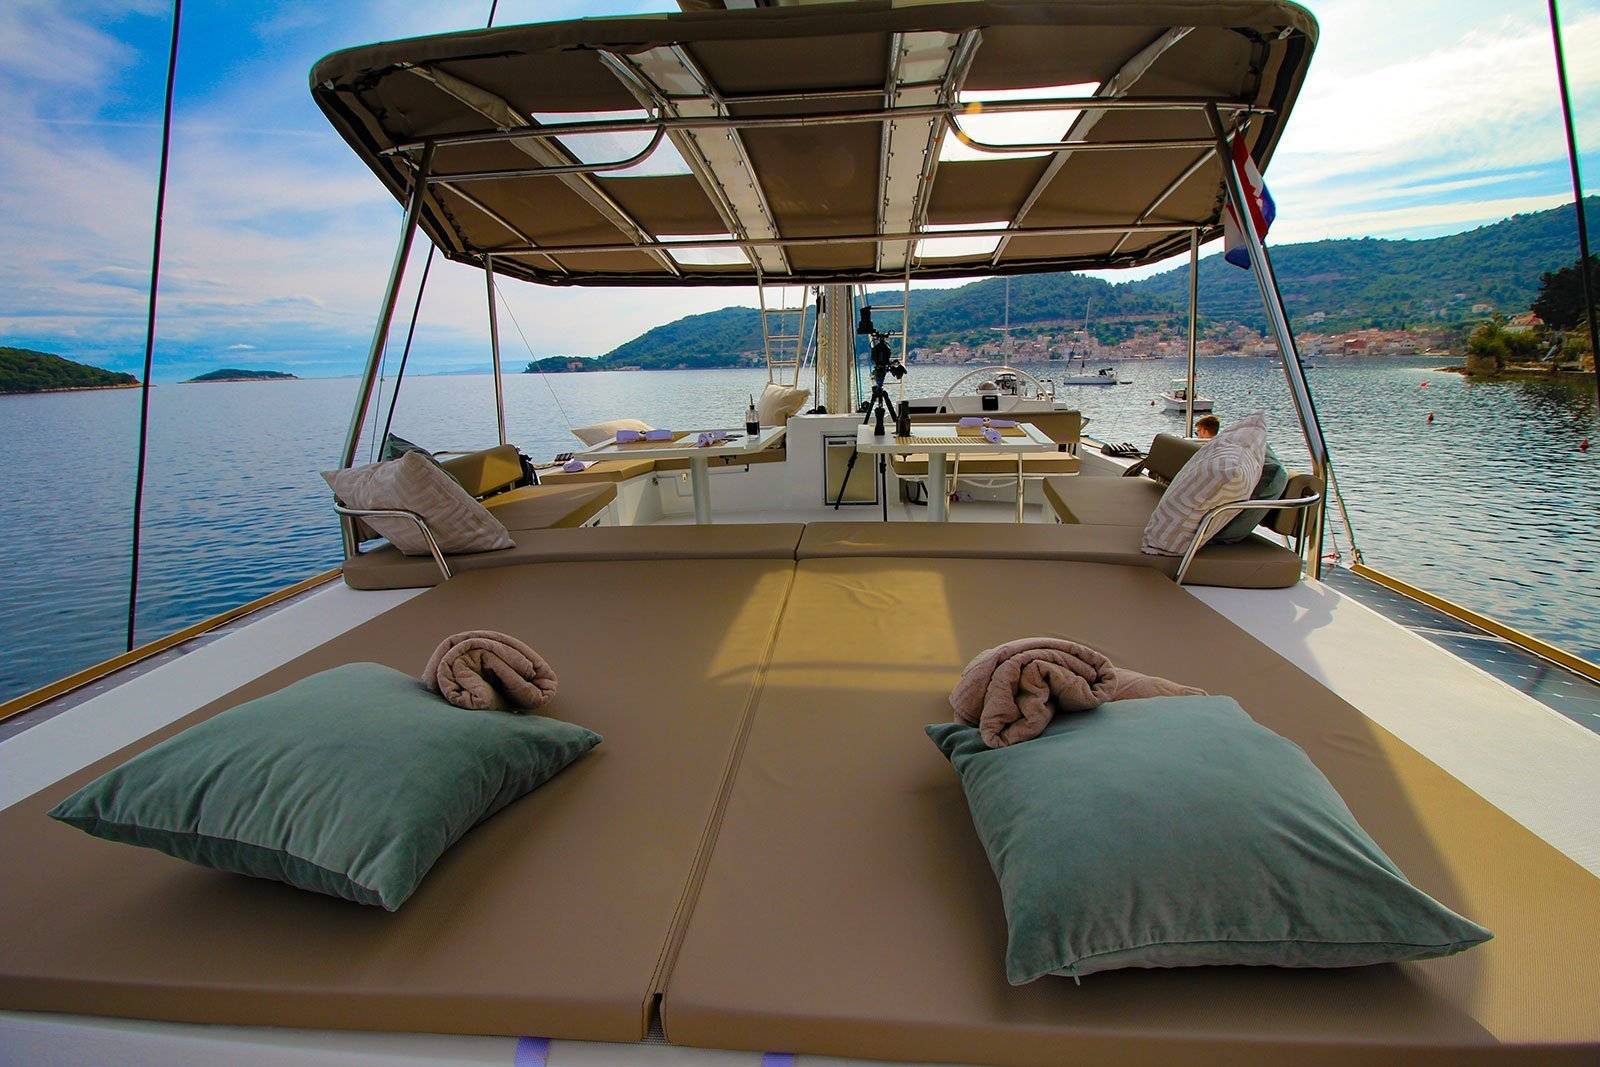 How to sail a catamaran? read our catamaran sailing tips